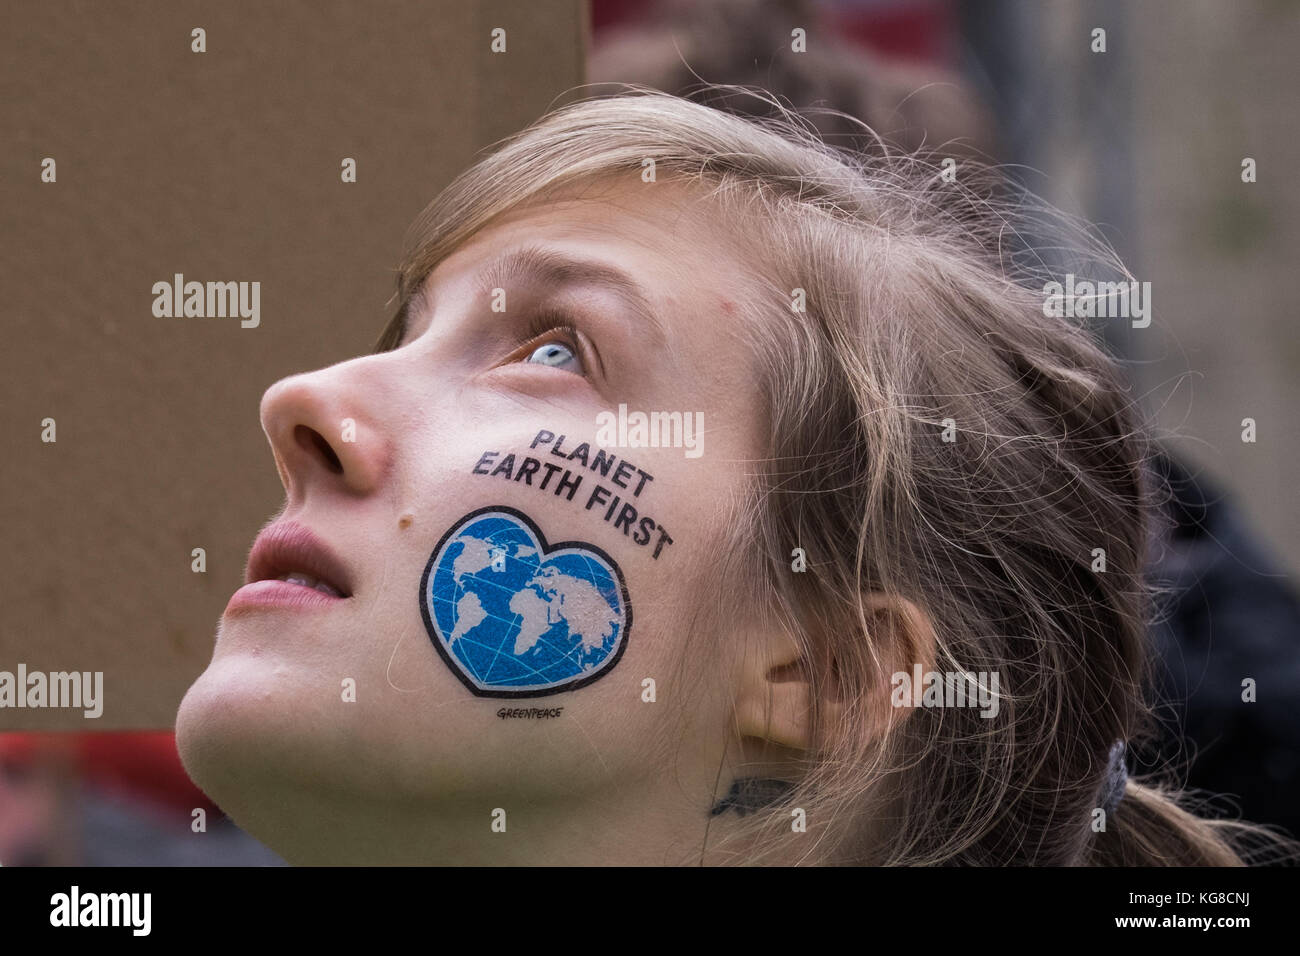 November 4, 2017 - Bonn, Nordrhein - Westfalen, Bundesrepublik Deutschland - eine Frau mit einem Tattoo auf die Wange geschrieben "Planet Erde" Während des Protestes gesehen. Als cop 23 ist, zu beginnen, 25.000 Menschen zusammen, in der die Menschen durch die Straßen von Bonn gleichermaßen bezeichnenden und dringende Maßnahmen der internationalen Gemeinschaft zum Klimawandel zu verlangen. Credit: Alban grosdidier/Sopa/zuma Draht/alamy leben Nachrichten Stockfoto